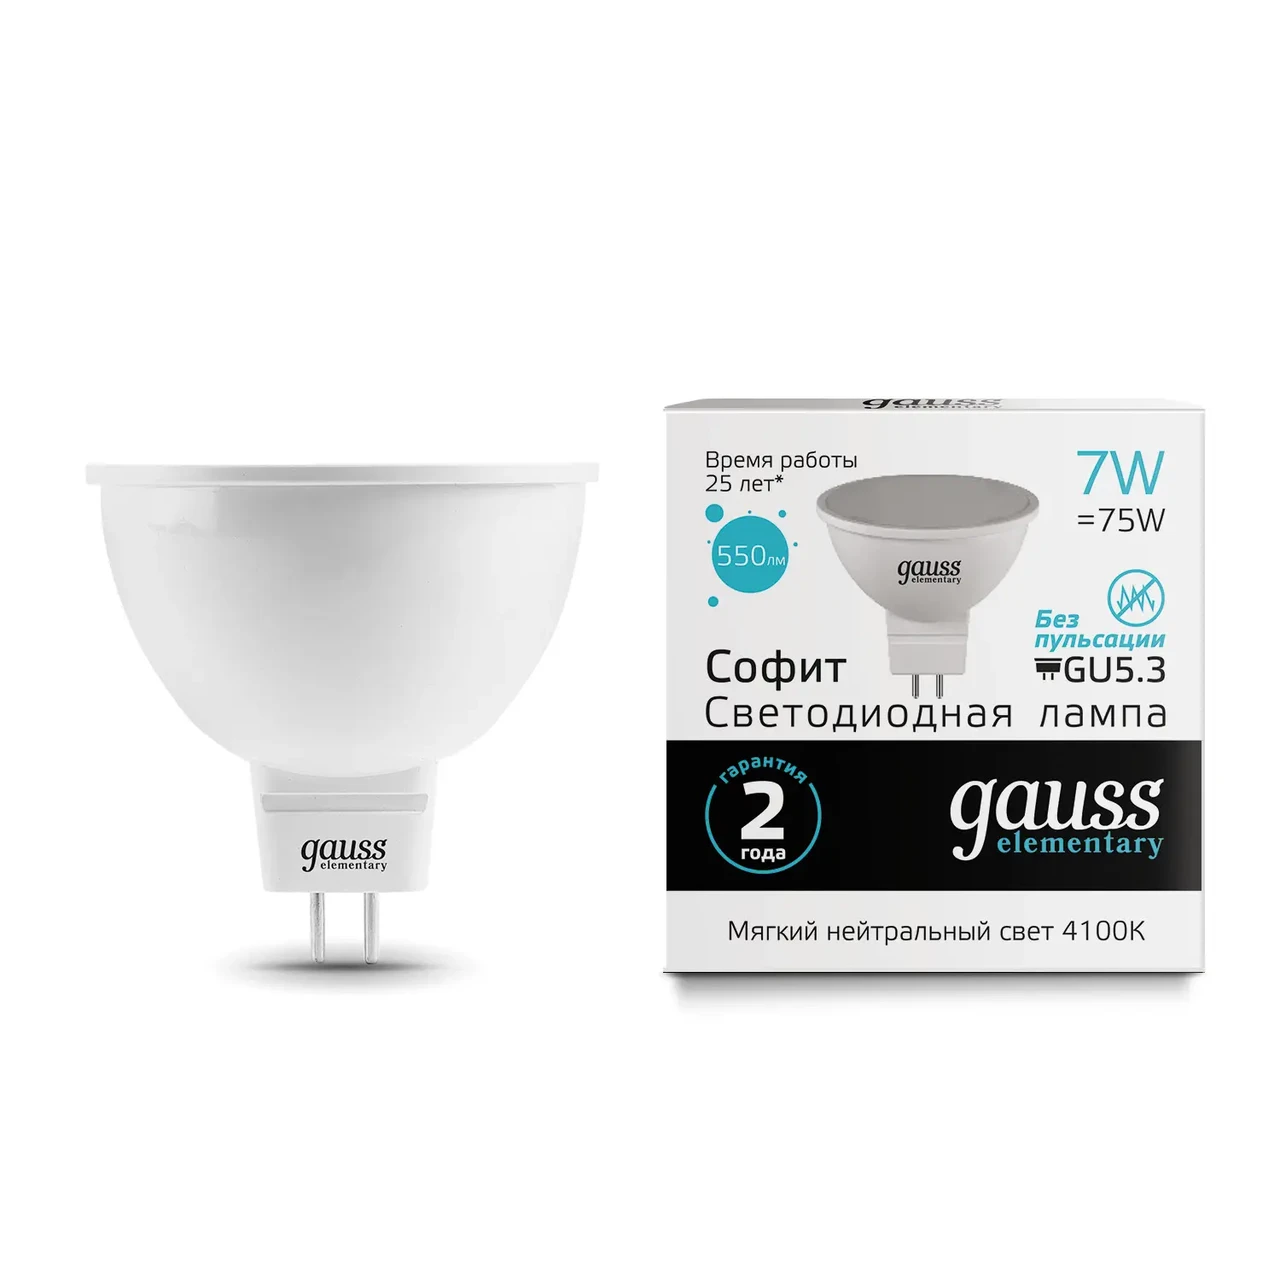 Лампа Gauss Elementary MR16 7W 550lm 4100K GU5.3 LED 1/10/100, фото 1